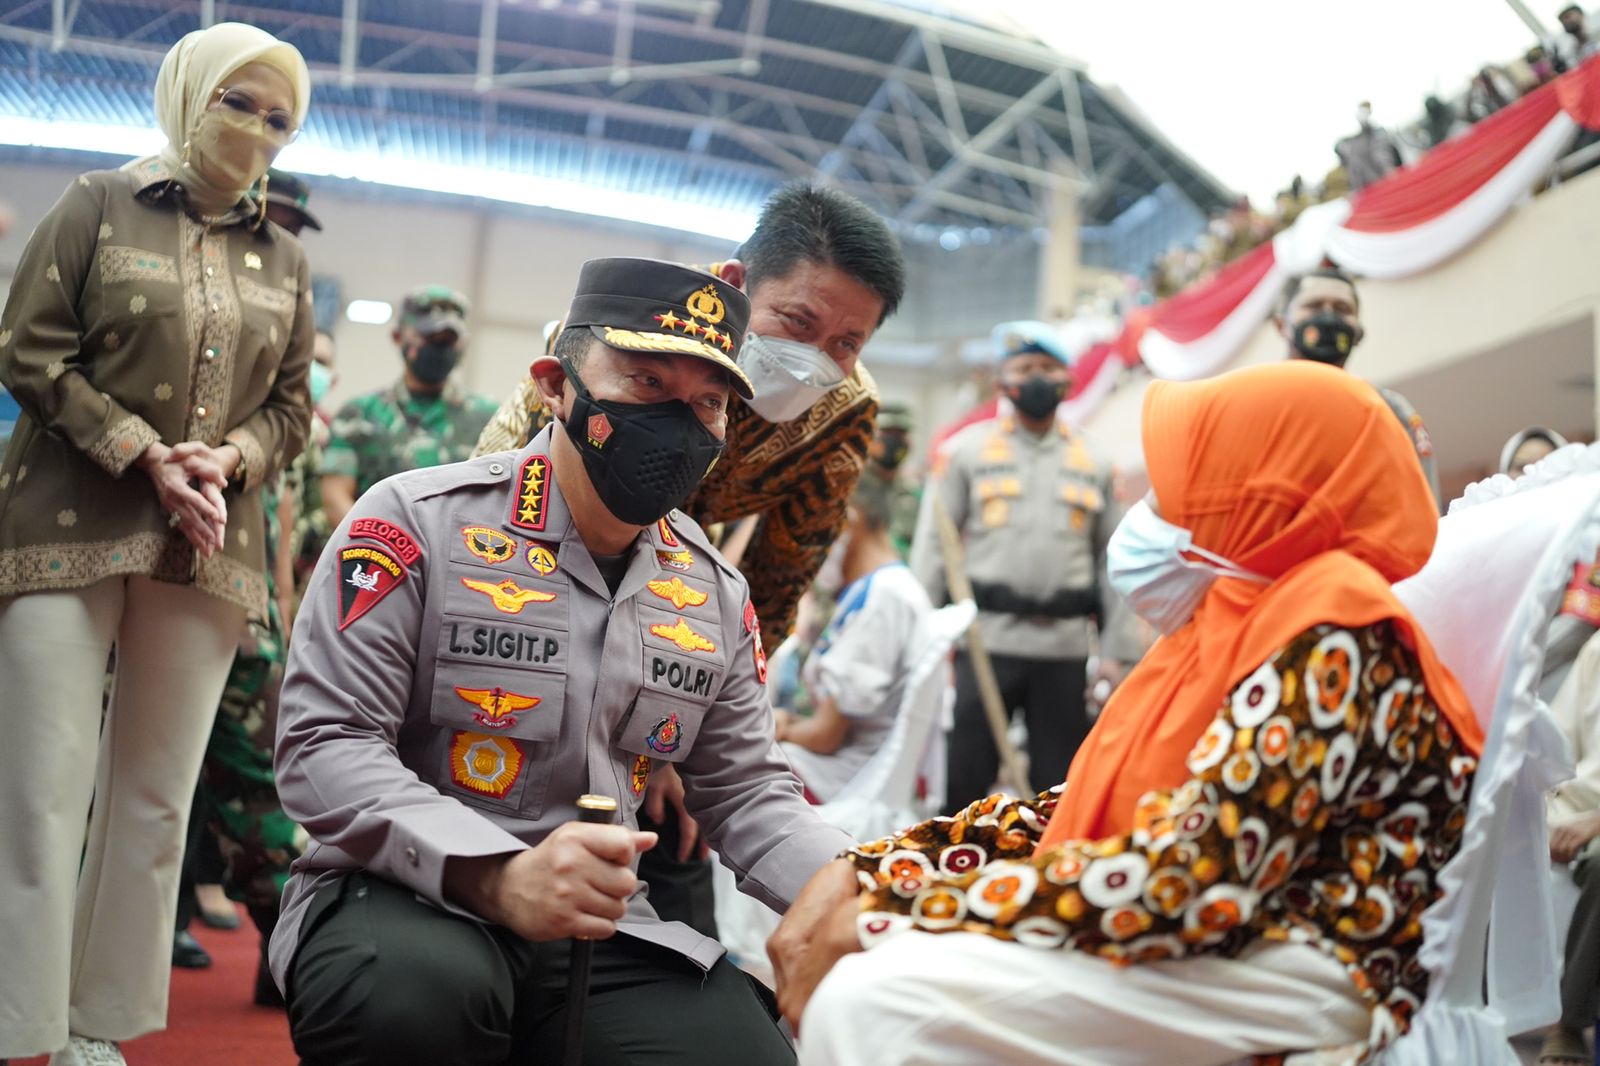 Tinjau Vaksinasi Se-Indonesia, Kapolri Dorong Percepatan Target Dosis Dua dan Booster